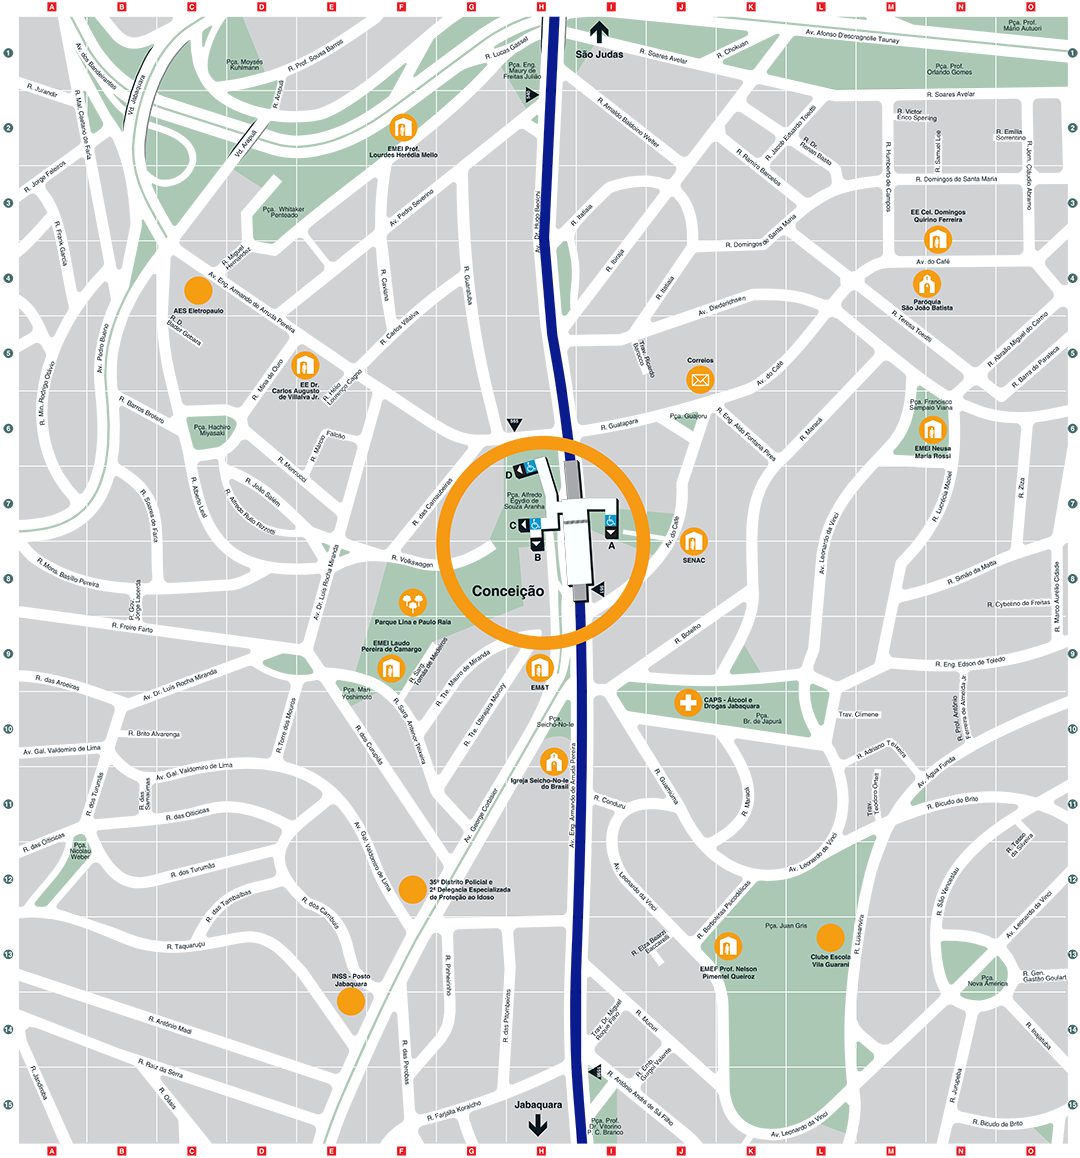 Mapa dos arredores da Estação Conceição